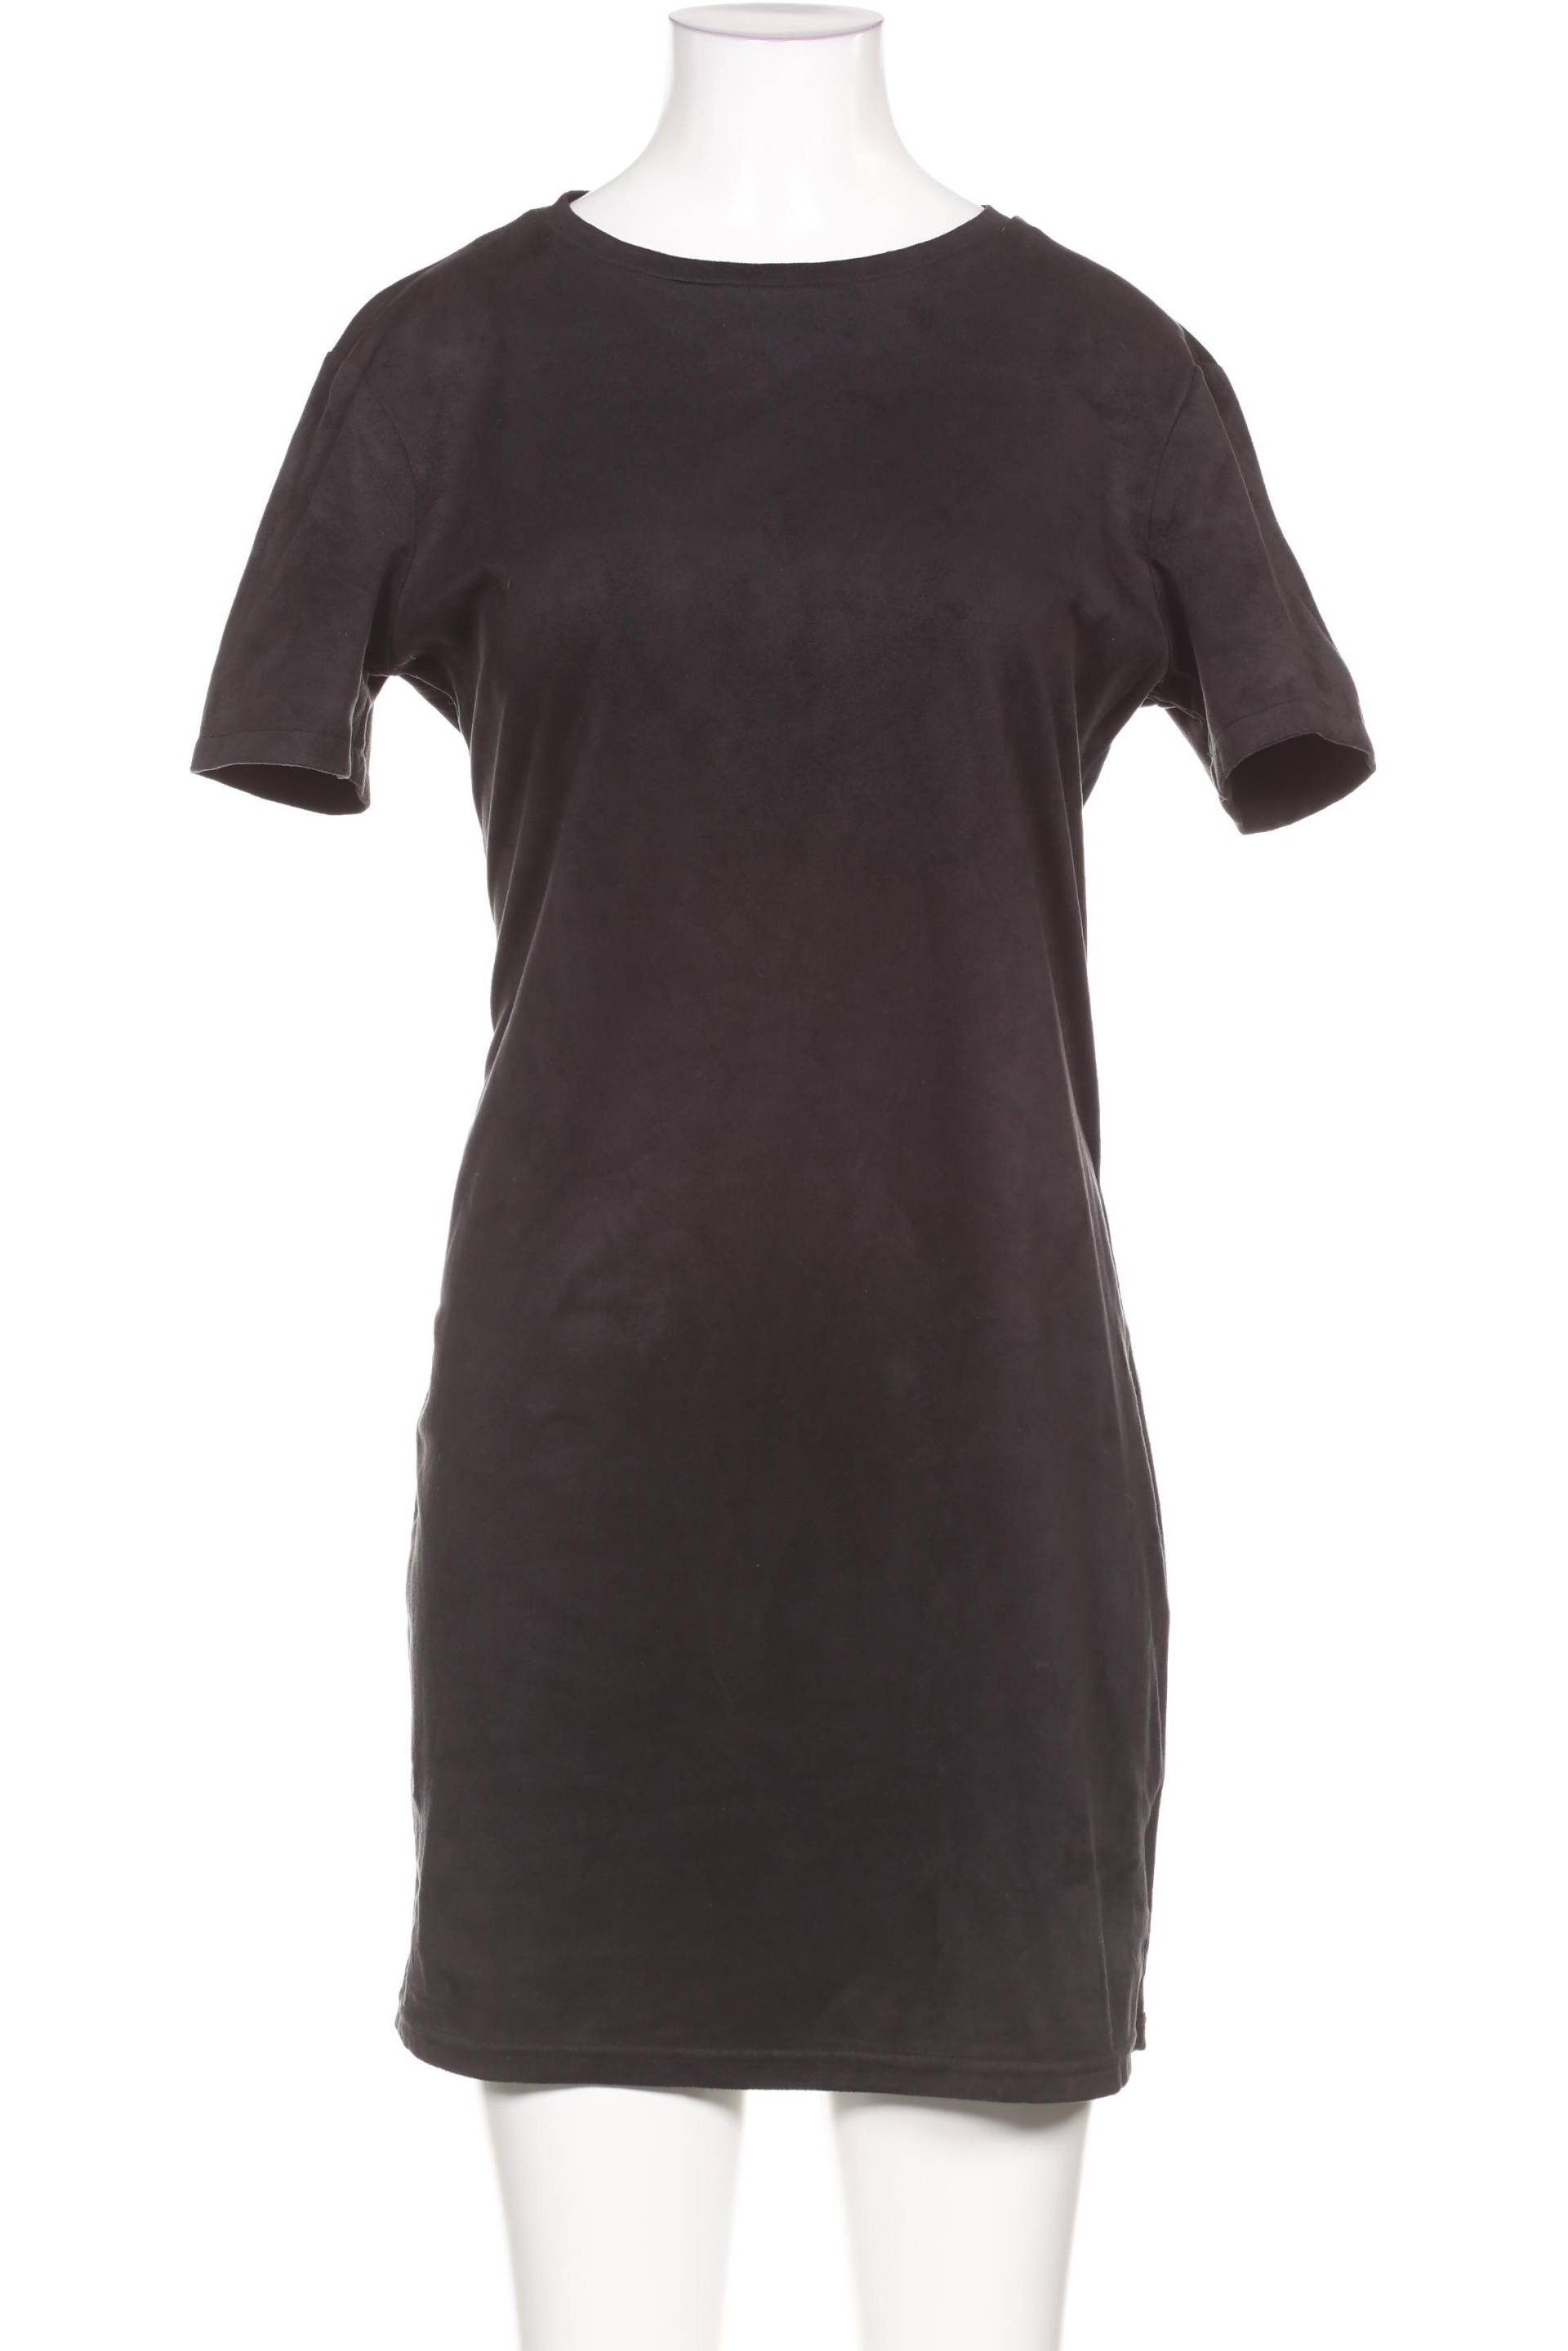 Zara Damen Kleid, grau, Gr. 38 von ZARA